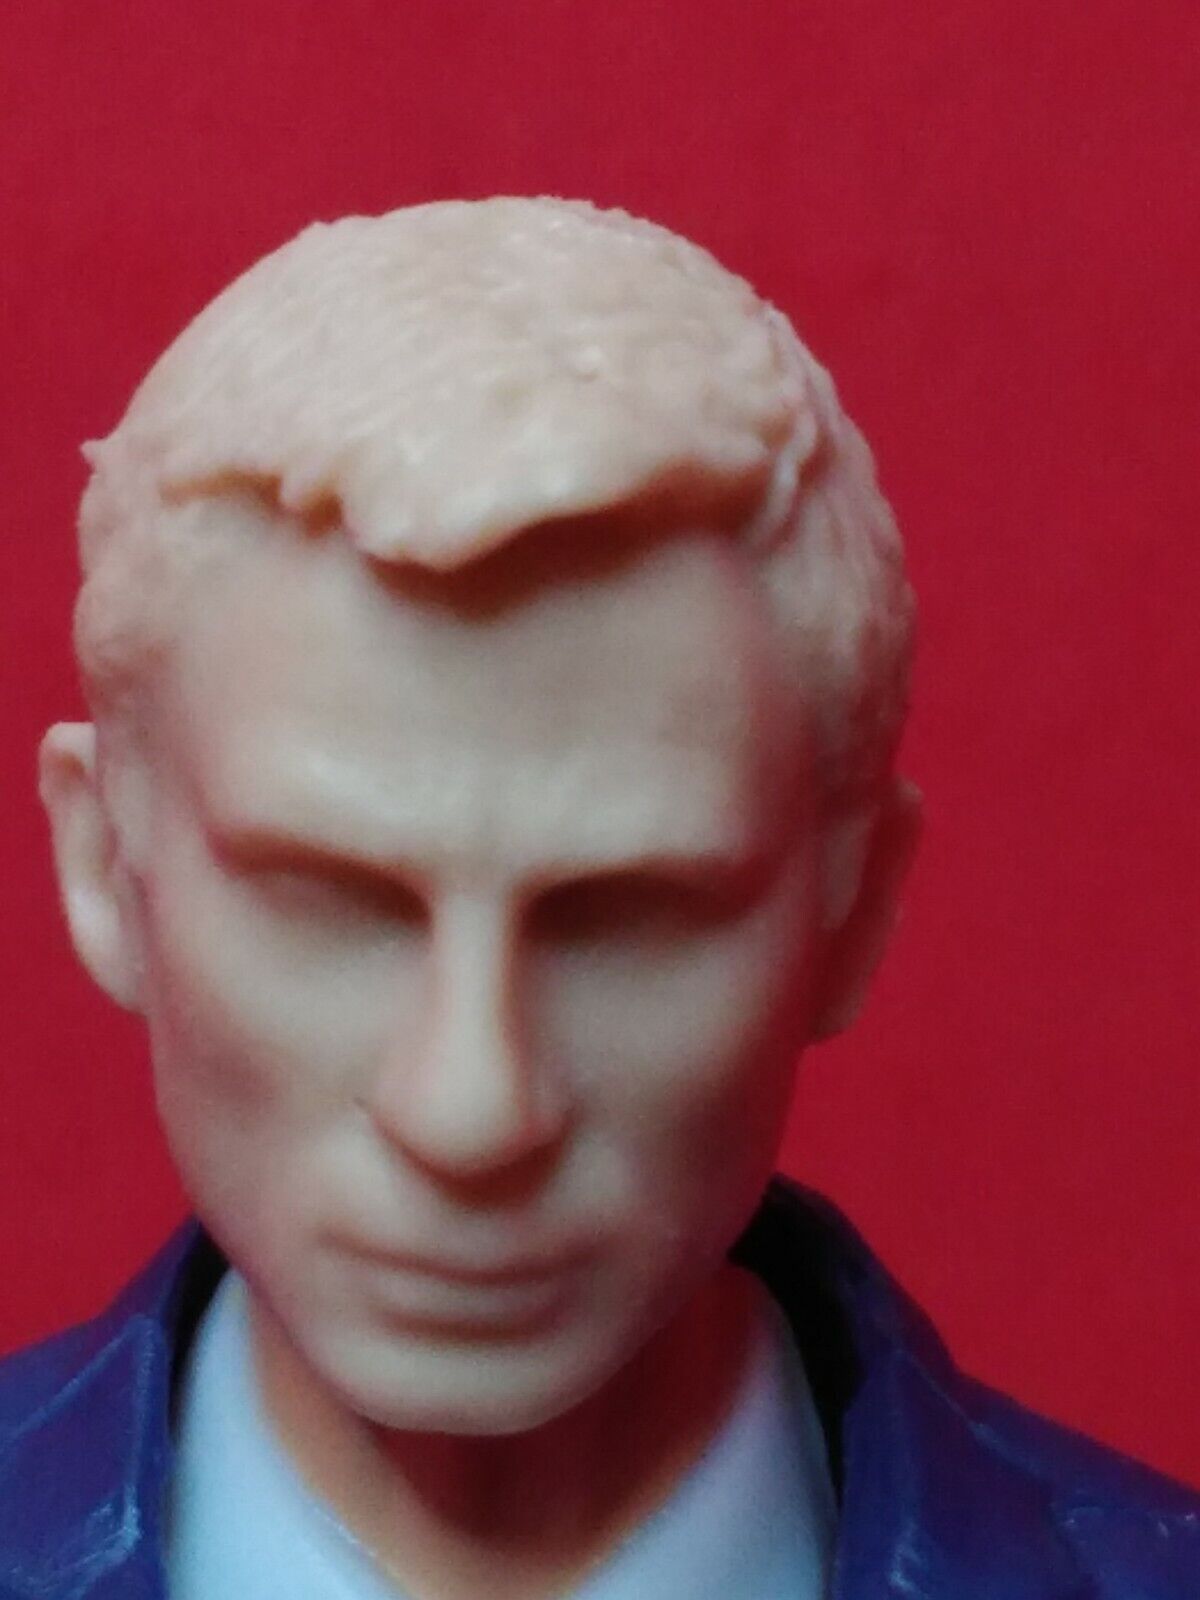 MH192 Custom Cast James Bond head sculpt for use with 1:18th scale GI Joe